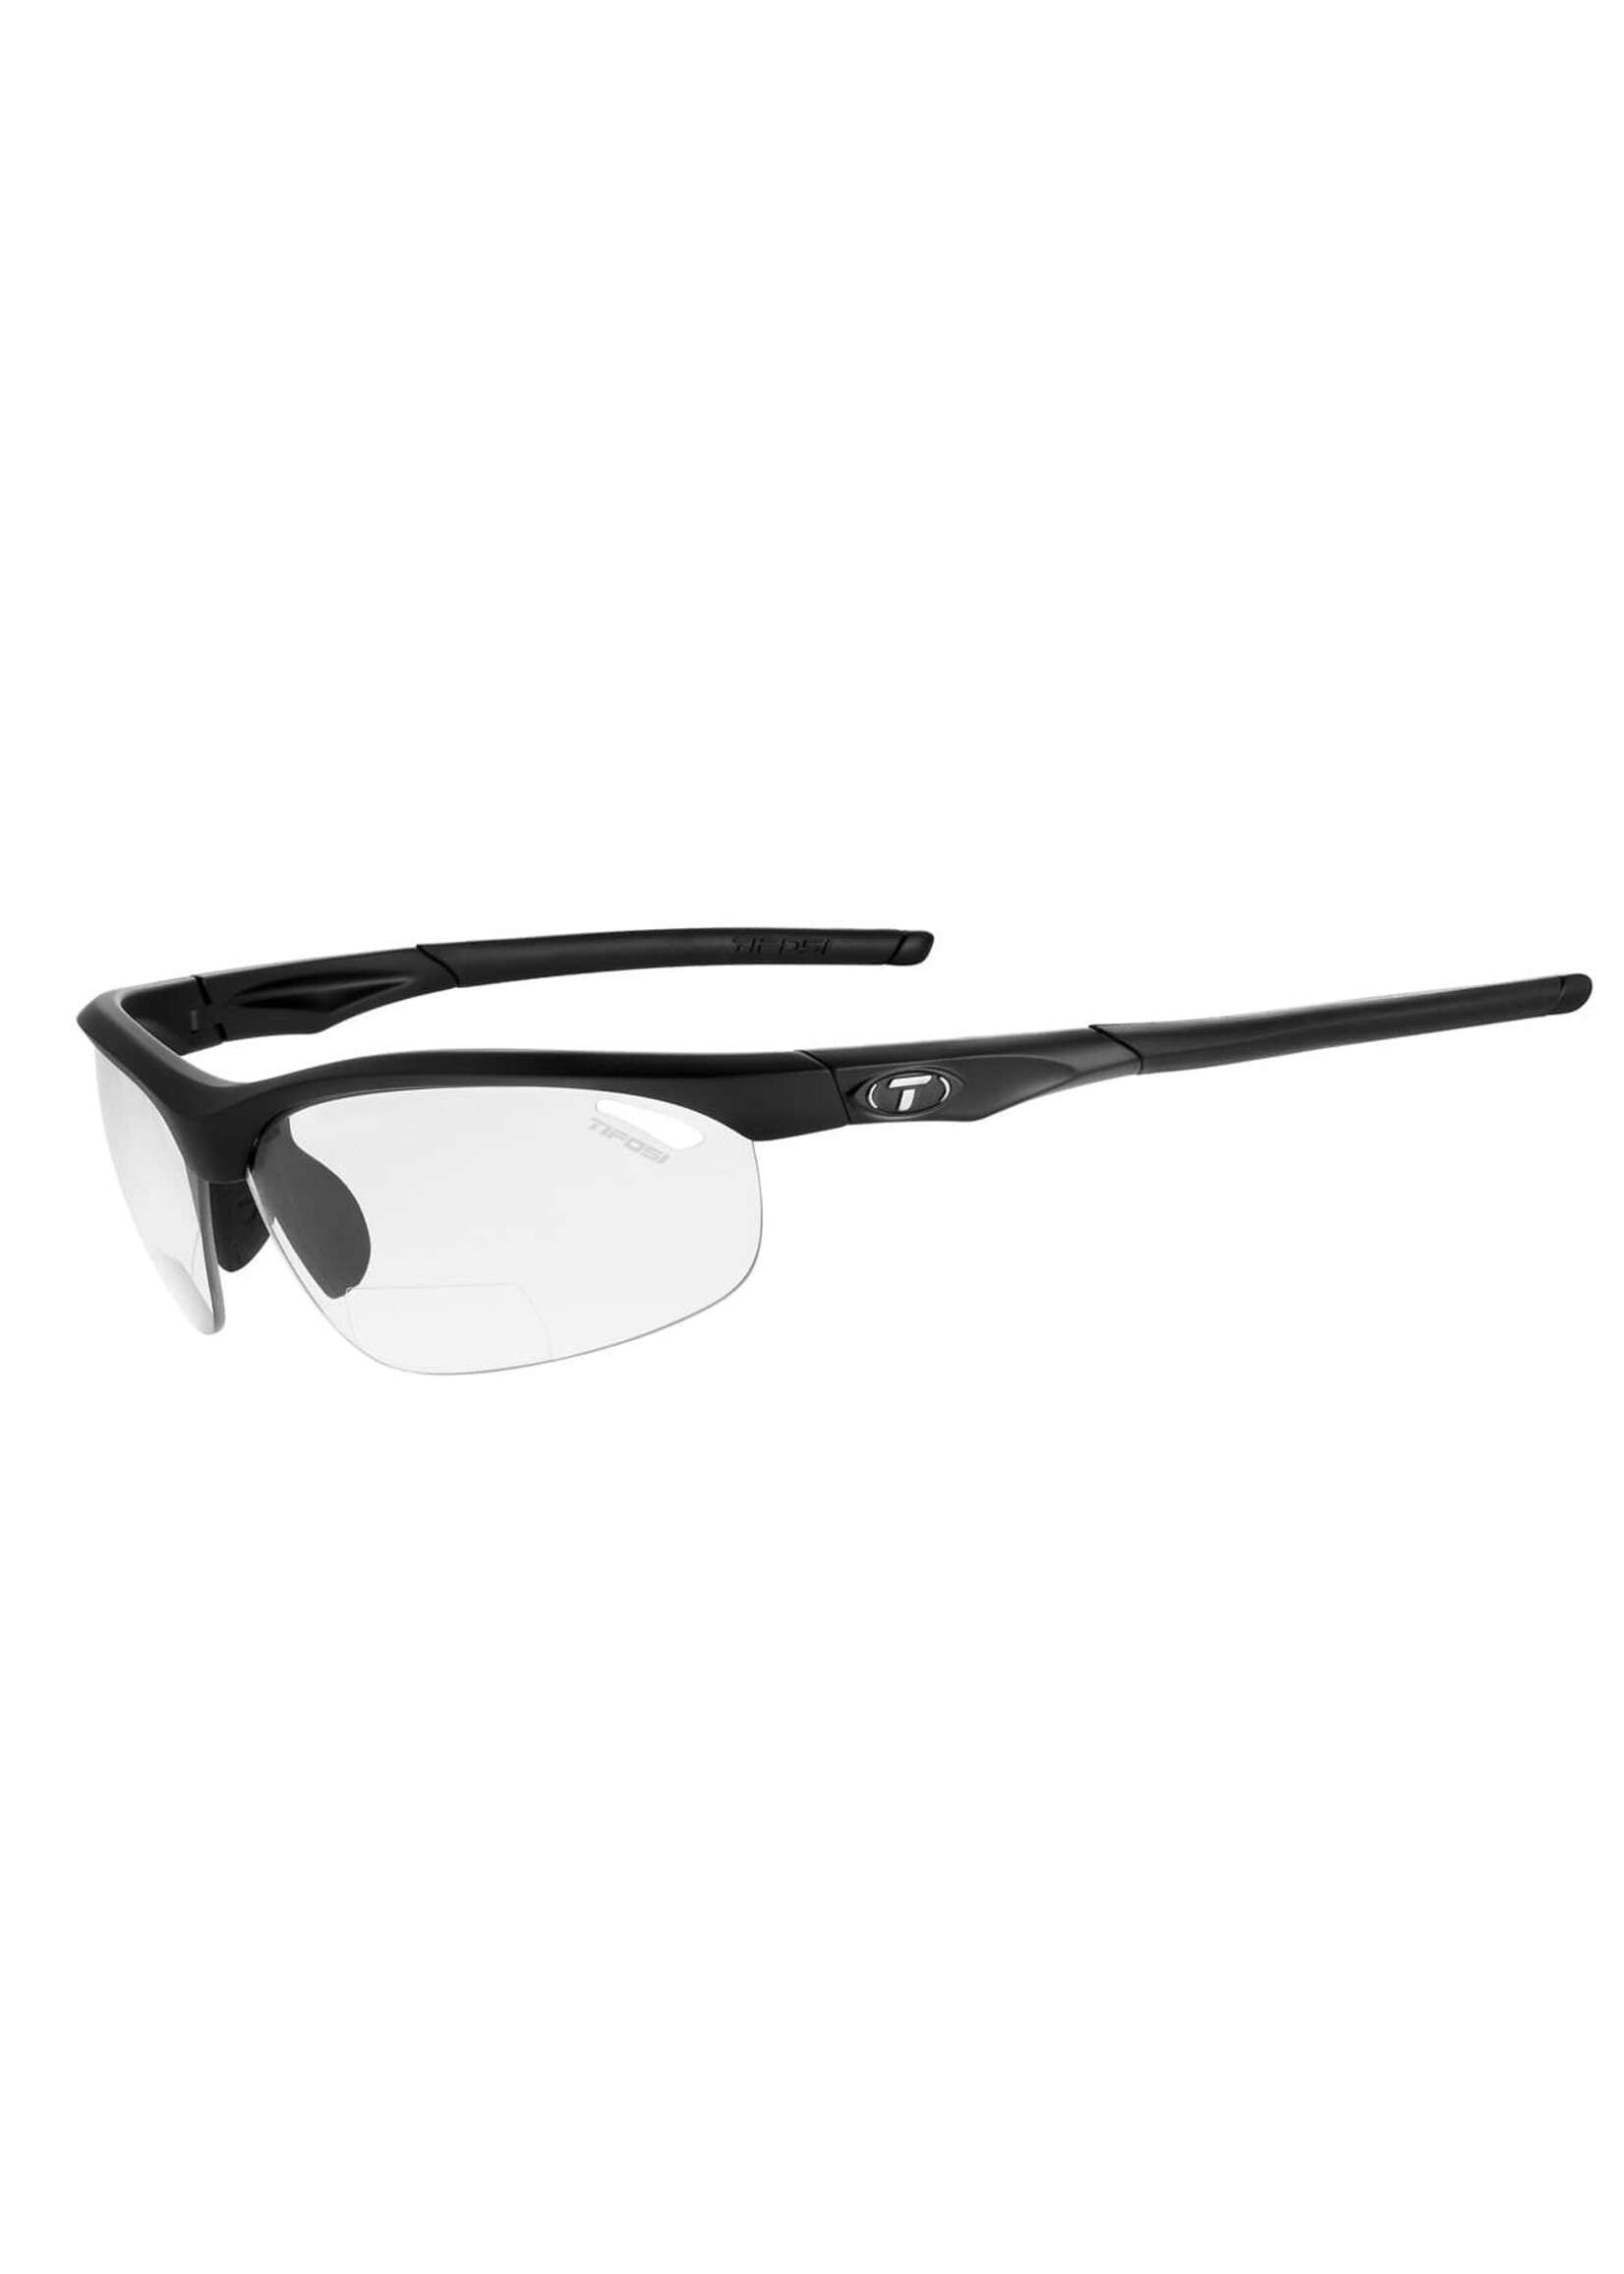 Tifosi Tifosi Veloce Reader Lense Sunglasses +2.0 Fototec Lenses Matte Black